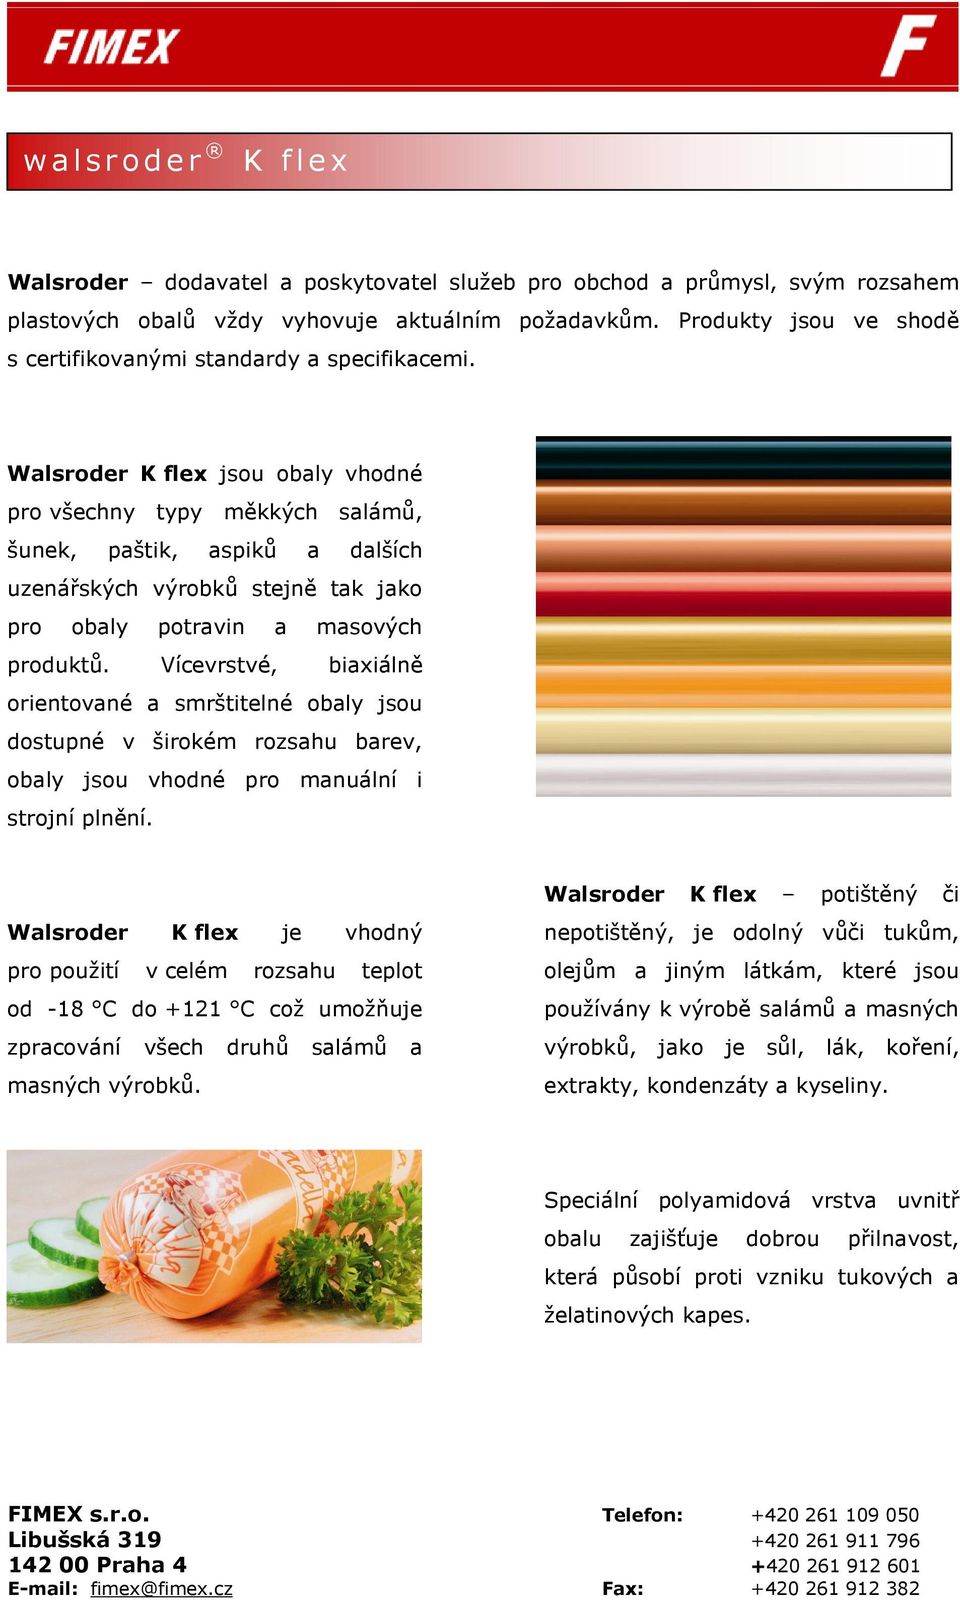 Walsroder K flex jsou obaly vhodné pro všechny typy měkkých salámů, šunek, paštik, aspiků a dalších uzenářských výrobků stejně tak jako pro obaly potravin a masových produktů.